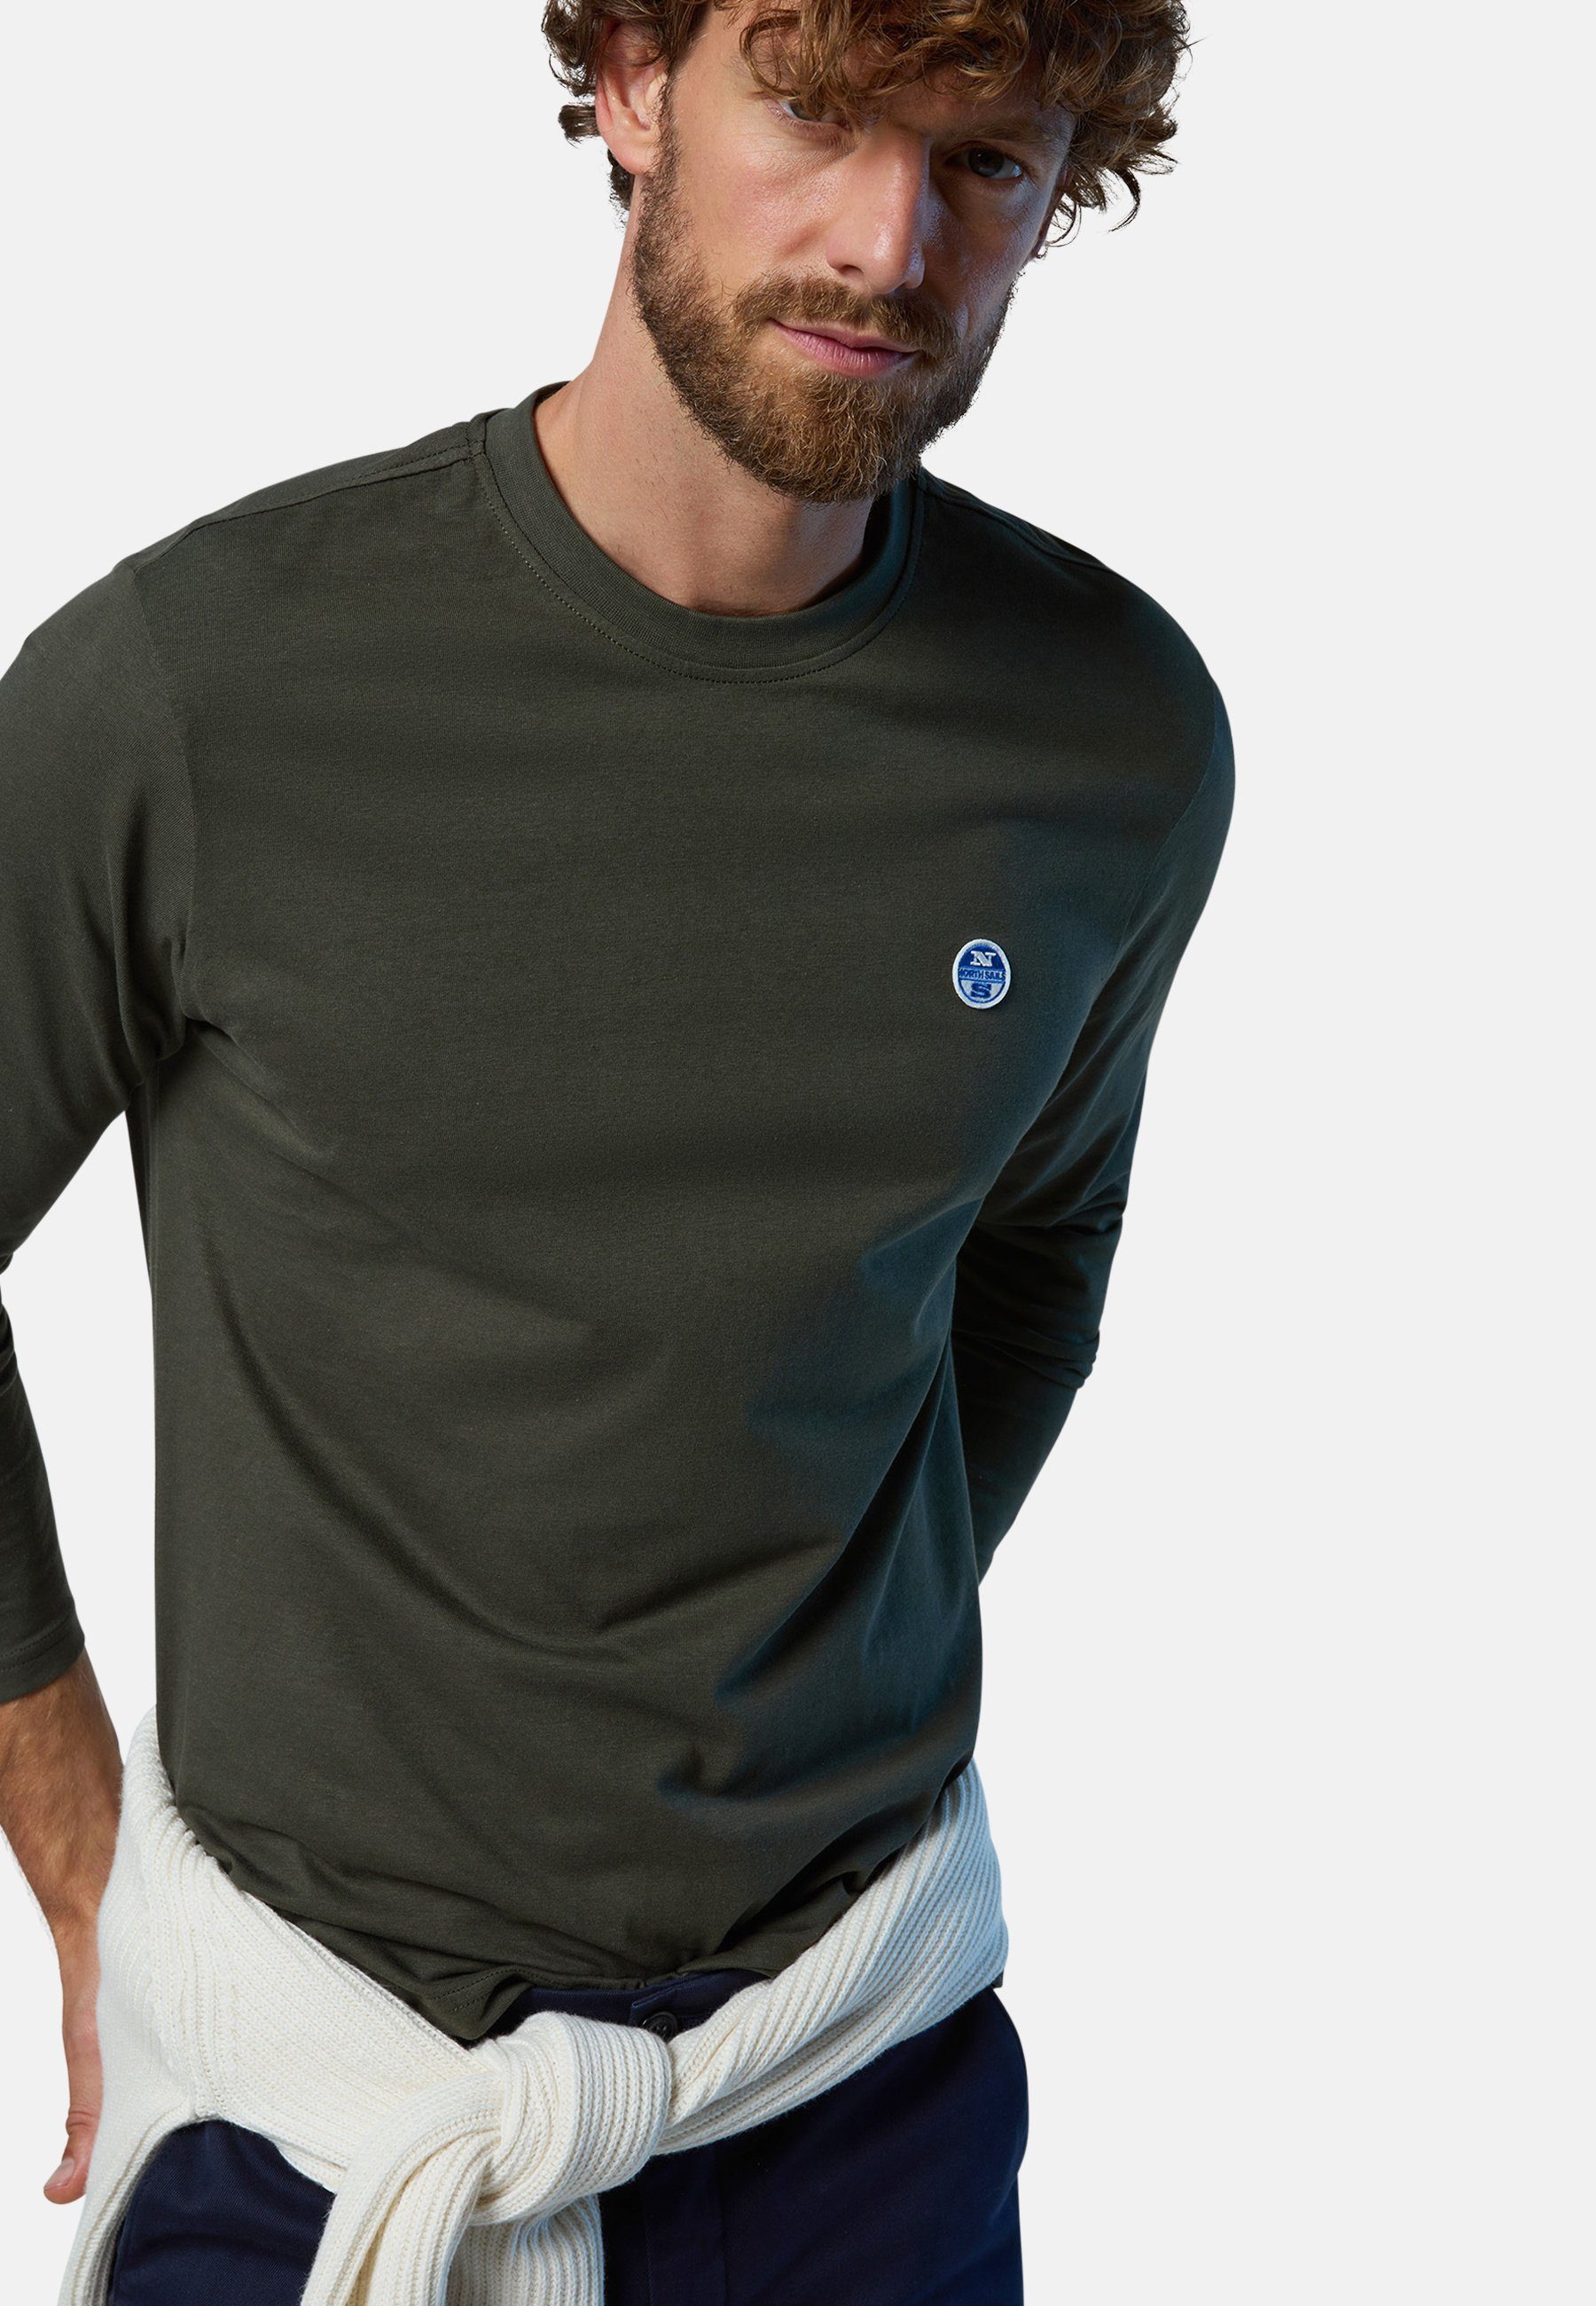 Langarm-T-Shirt mit Logo-Aufnäher Design green North Sails klassischem mit T-Shirt